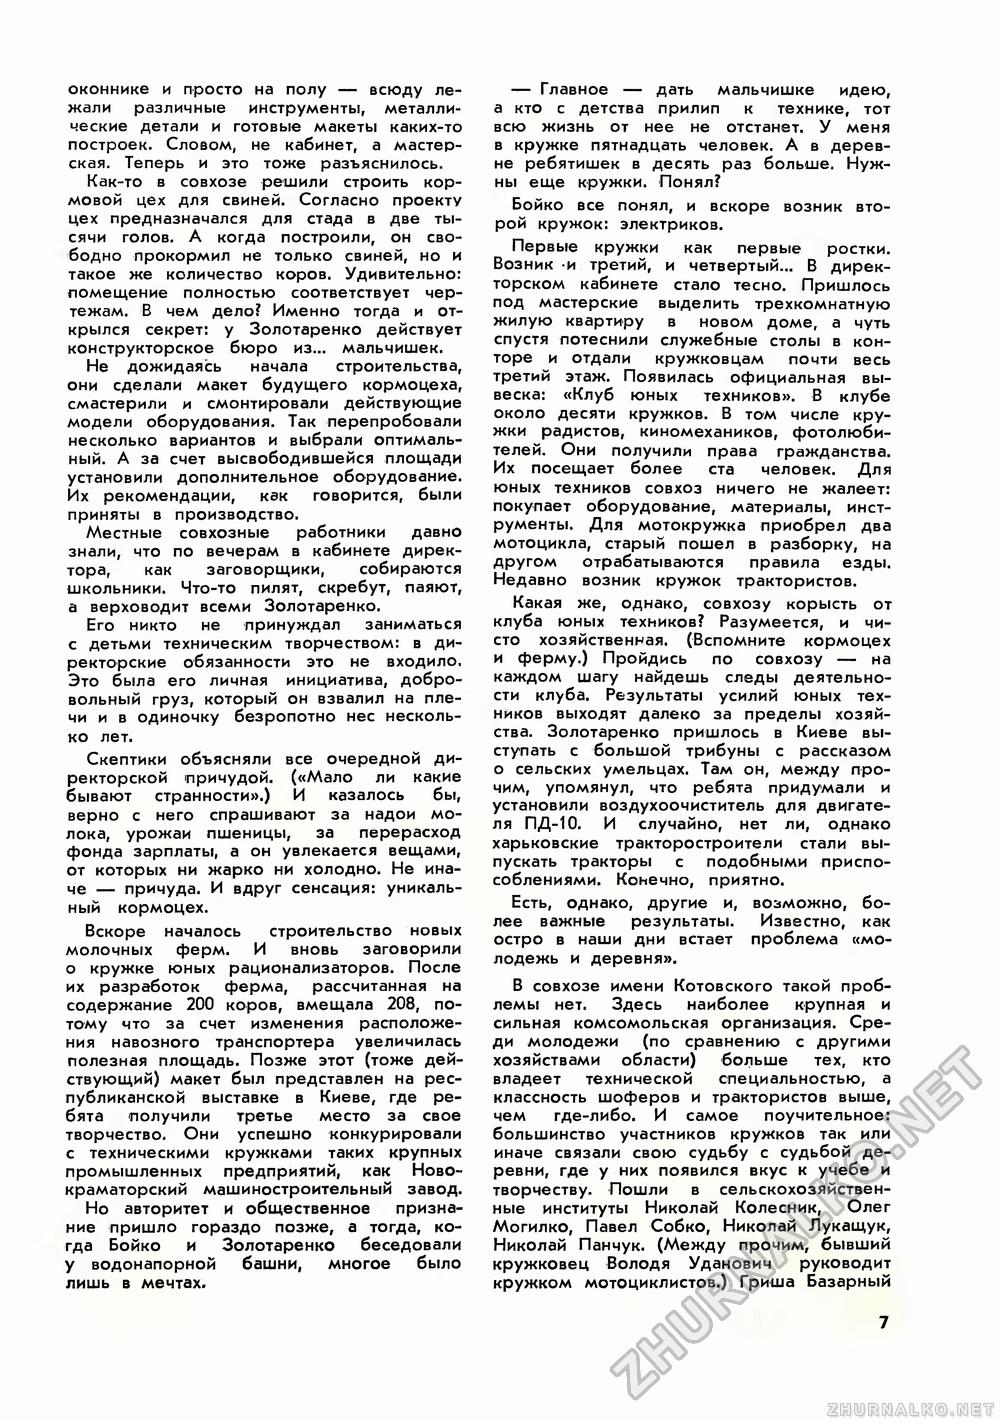 Юный техник 1970-11, страница 9